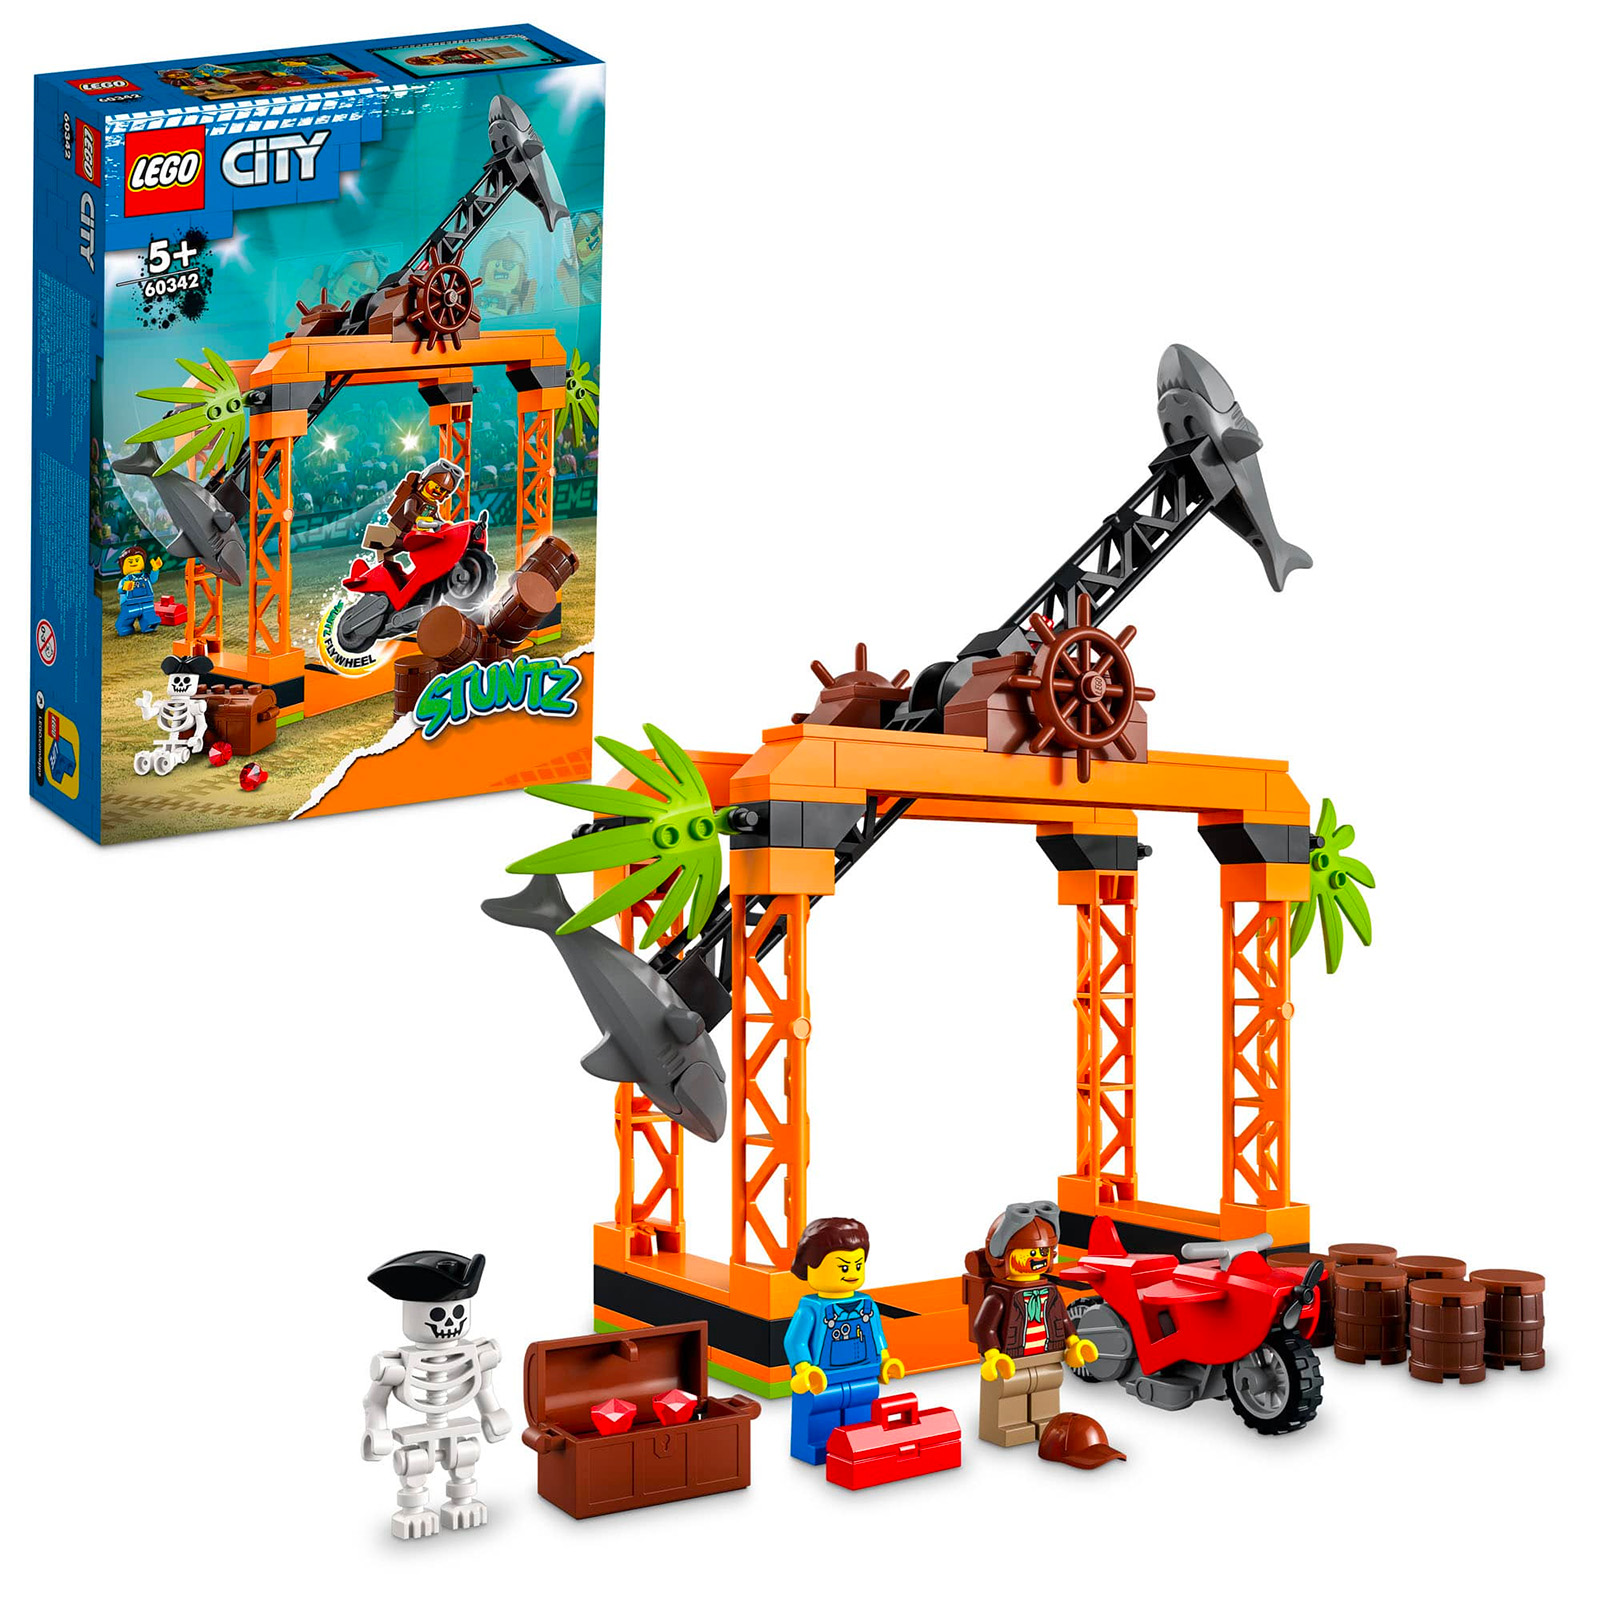 Hoth Bricks on X: Nouveautés LEGO CITY 2021 : fin des plaques de